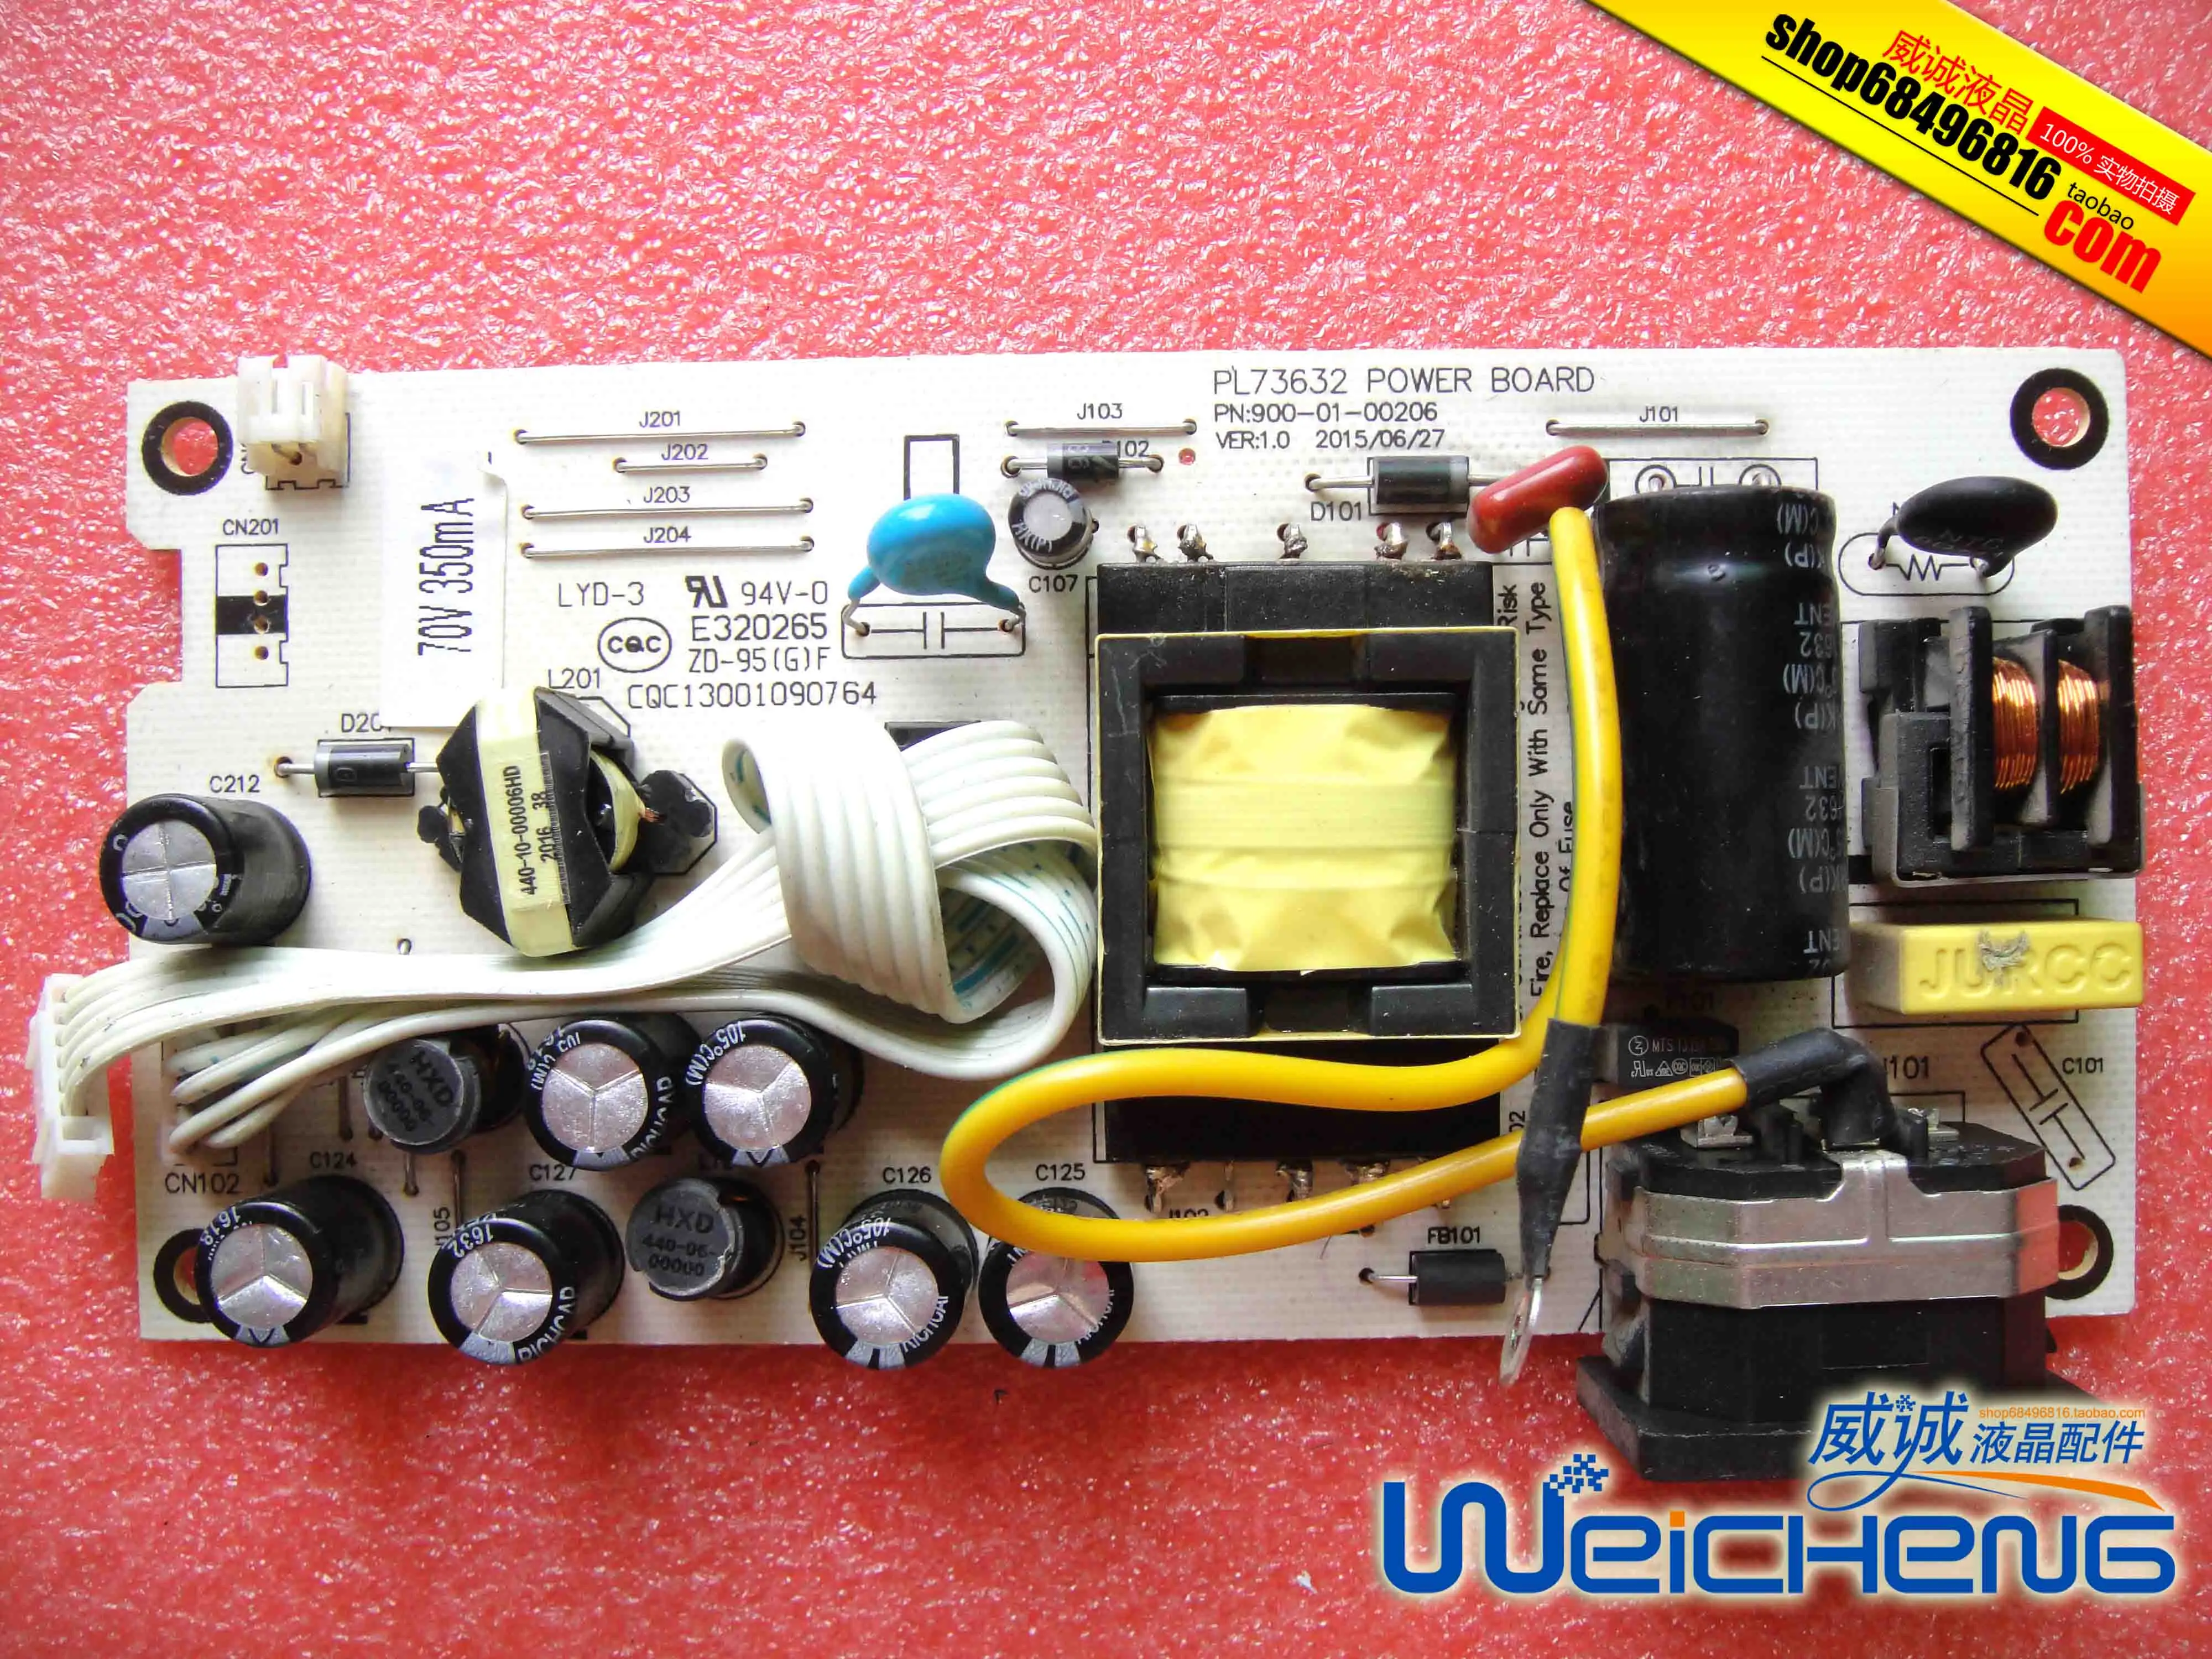 

Dongxing/EasunG M9982B E919 PL73632 PN:900-01-00206 LCD power board